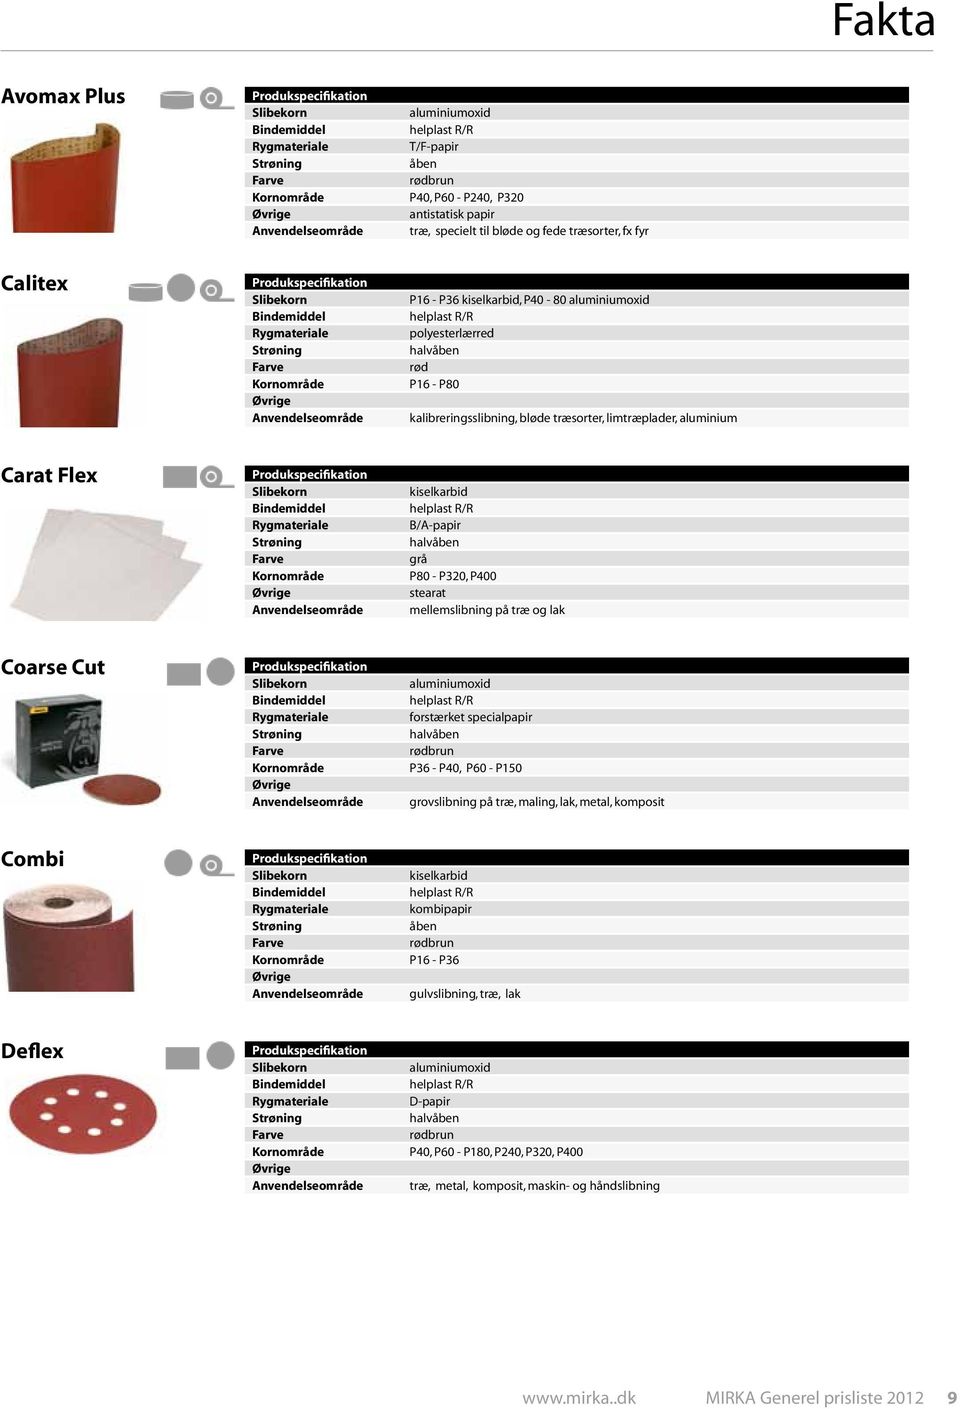 kiselkarbid, P40-80 aluminiumoxid helplast R/R polyesterlærred halvåben rød P16 - P80 kalibreringsslibning, bløde træsorter, limtræplader, aluminium Carat Flex Produkspecifikation Slibekorn